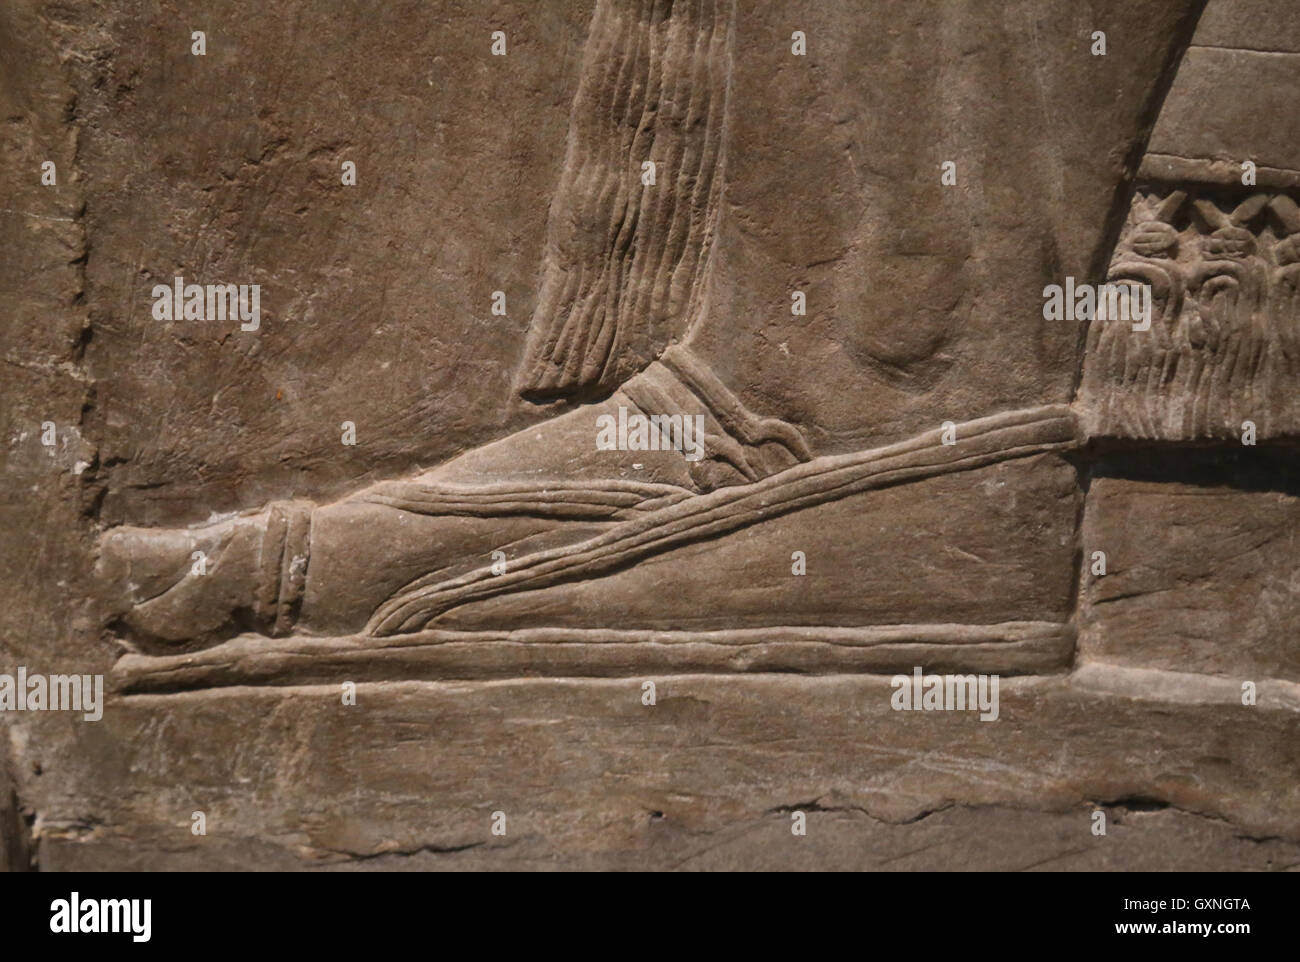 Il sollievo di Genius. Sandalo. Ix secolo A.C. Neo-Assyrian. Regno di Ashurnasirpal. Nimrud (antica Kalhu). Mesopotamia settentrionale. Foto Stock